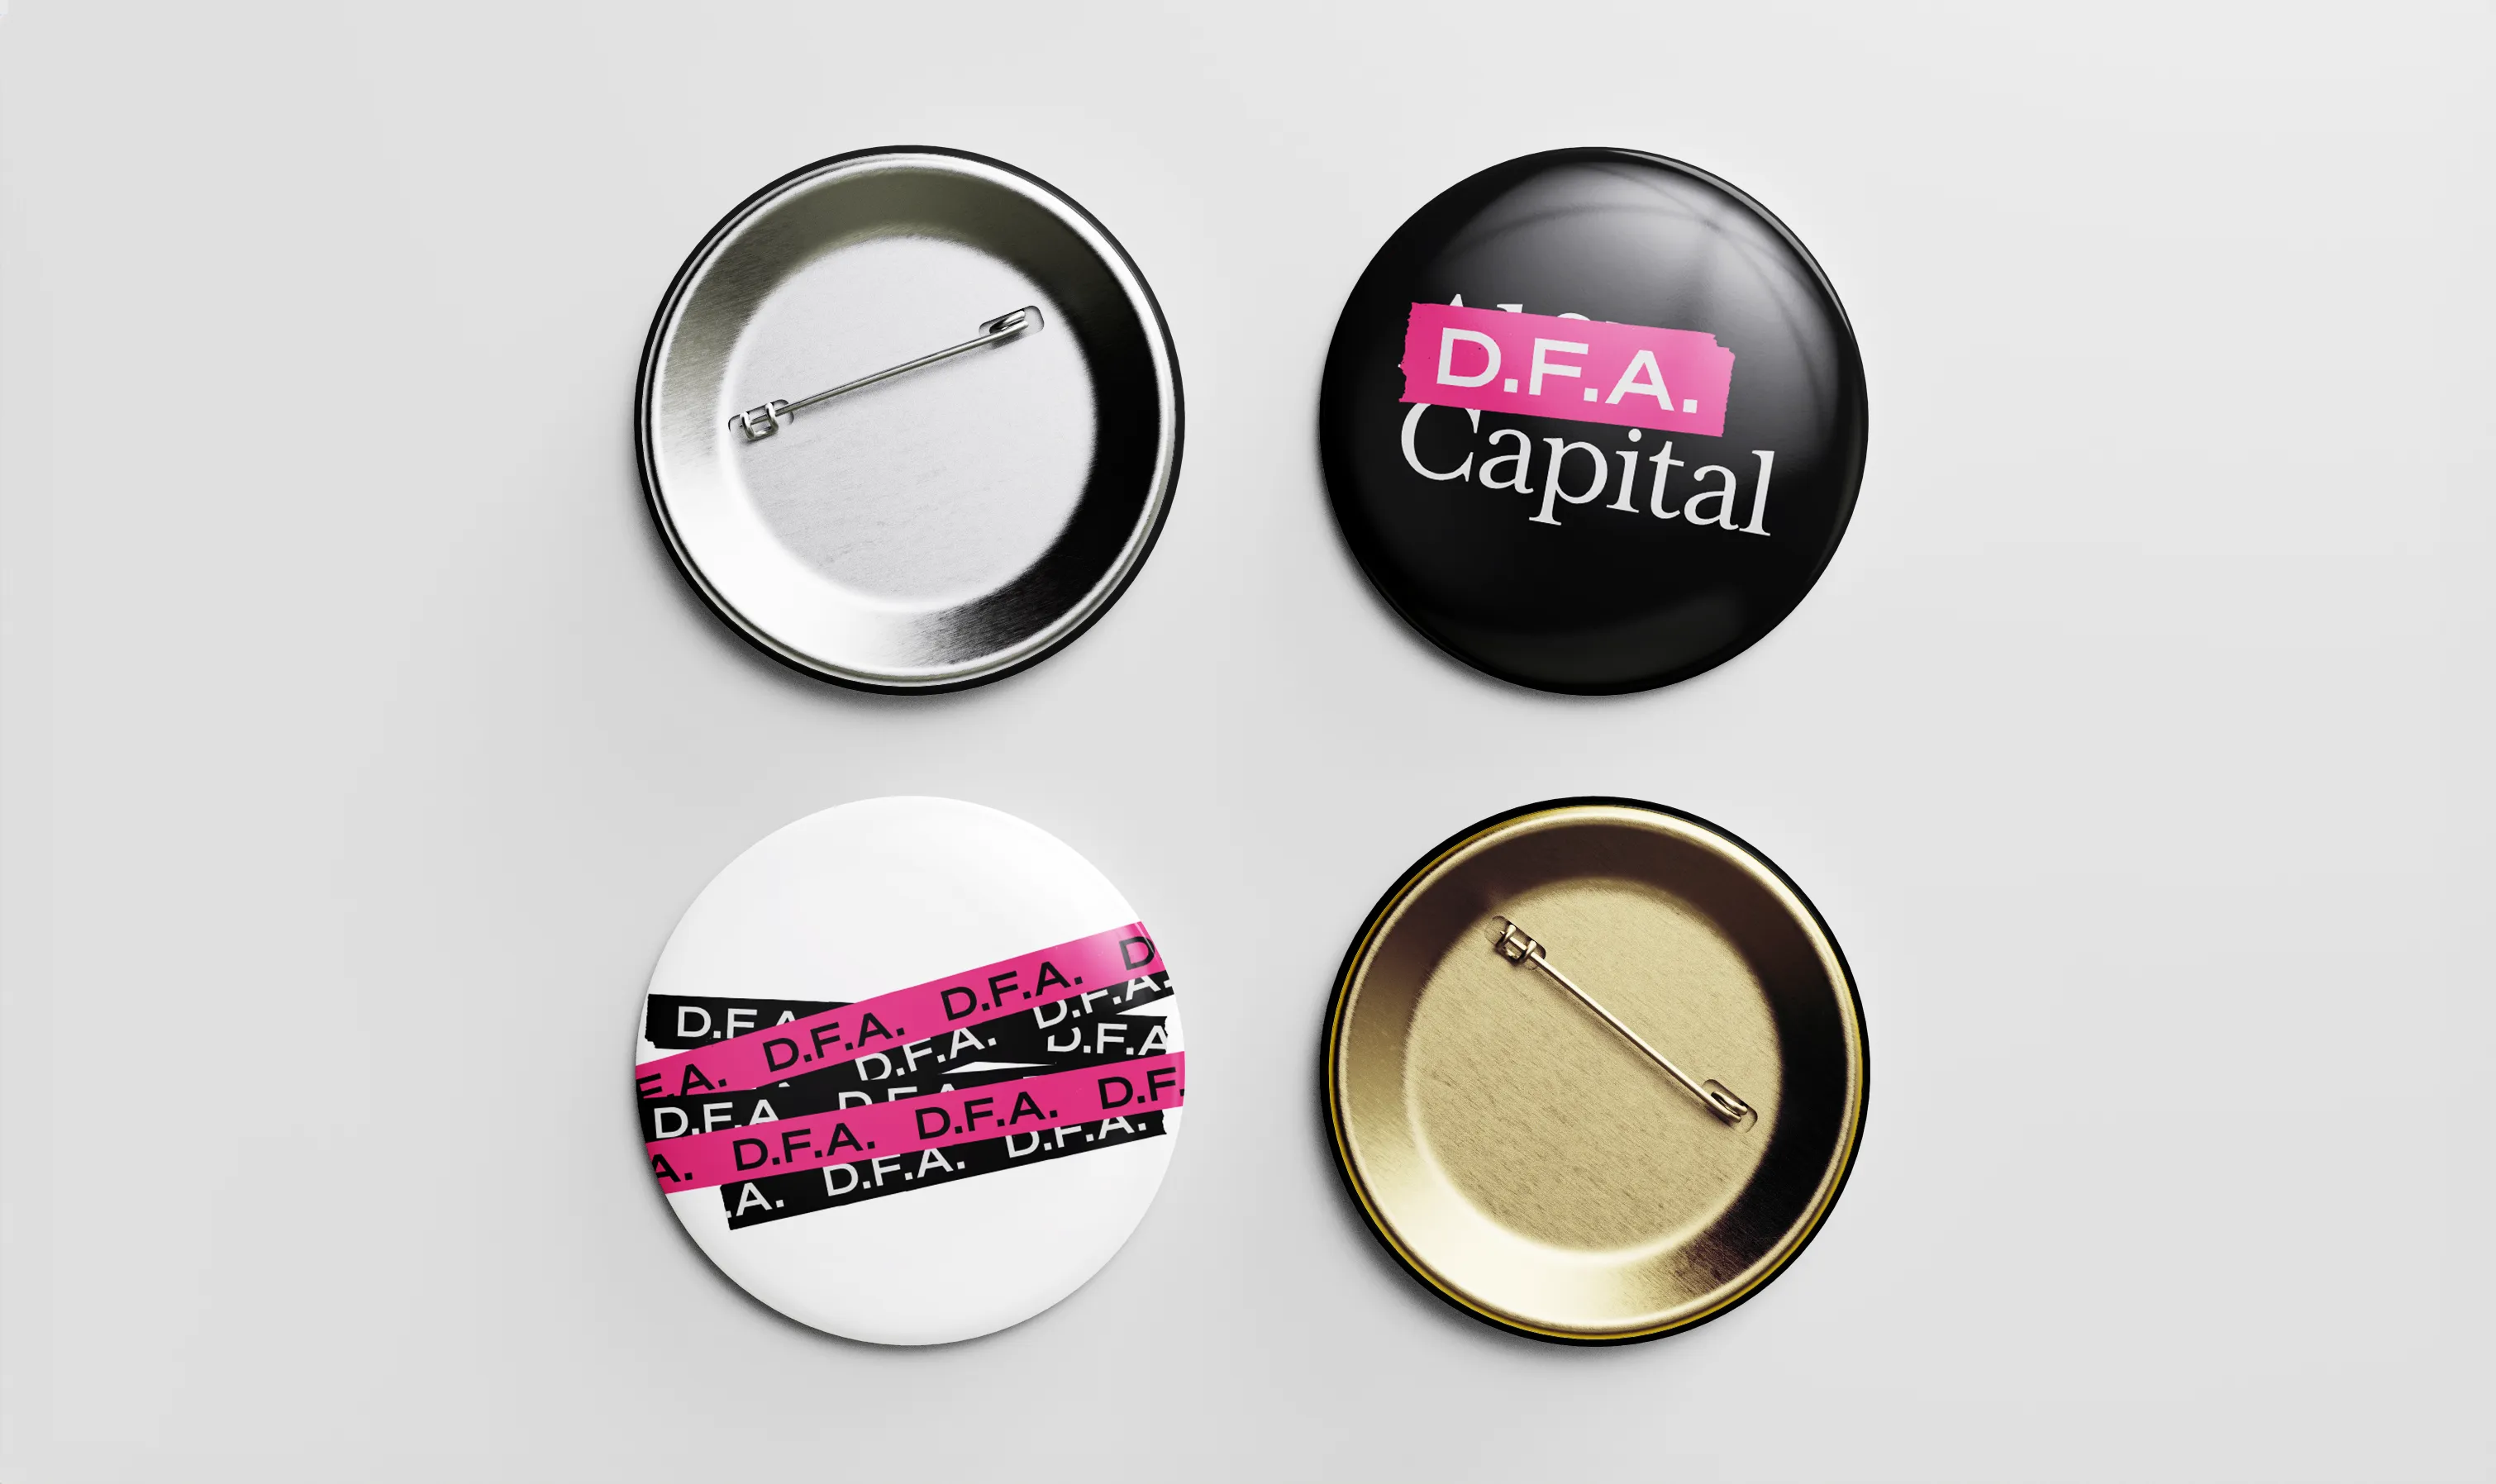 Image of D.F.A. Capital pins